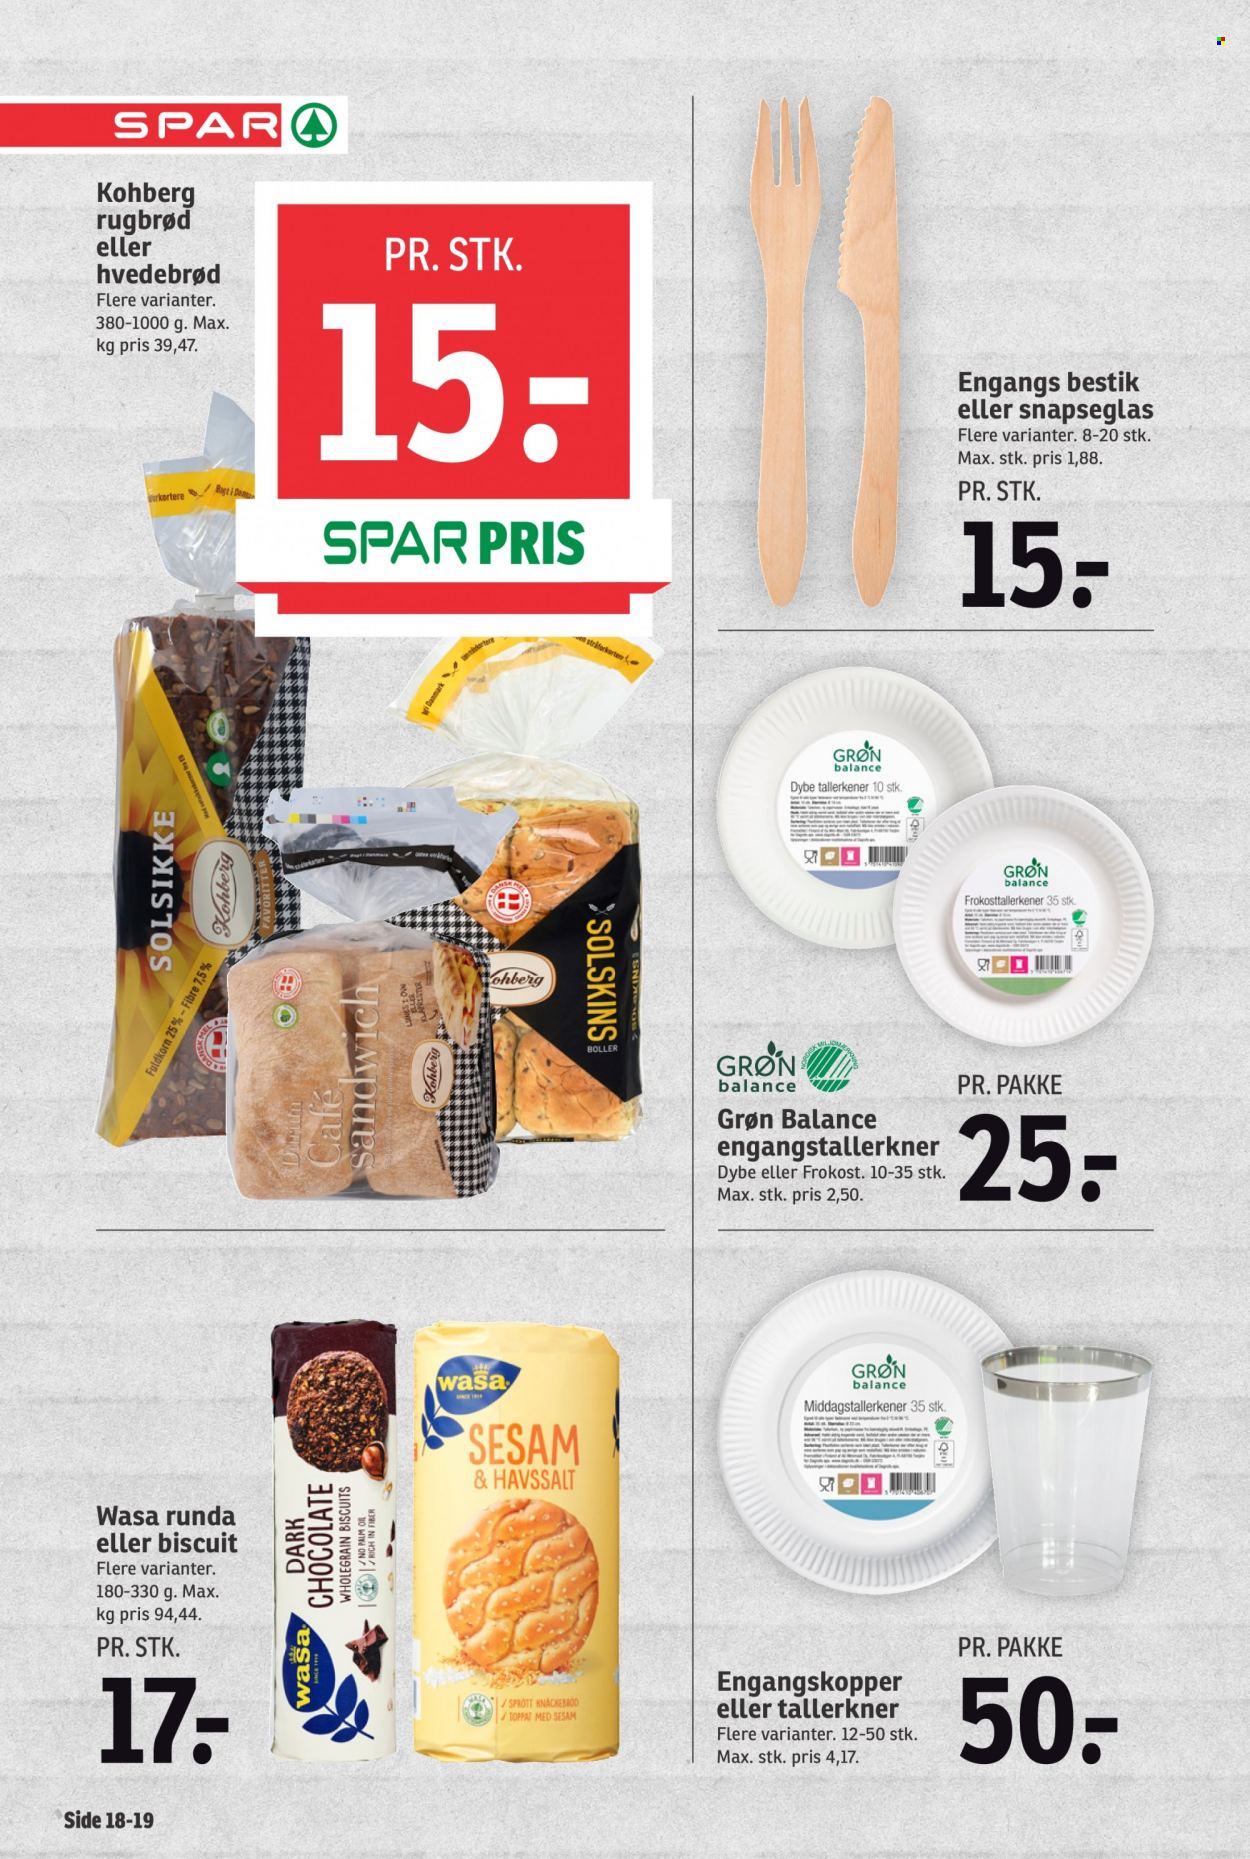 thumbnail - SPAR tilbud  - 25.6.2022 - 1.7.2022 - tilbudsprodukter - rugbrød, sandwich, boller, brød, hvedebrød, biscuits, Wasa, frokost, mel. Side 18.